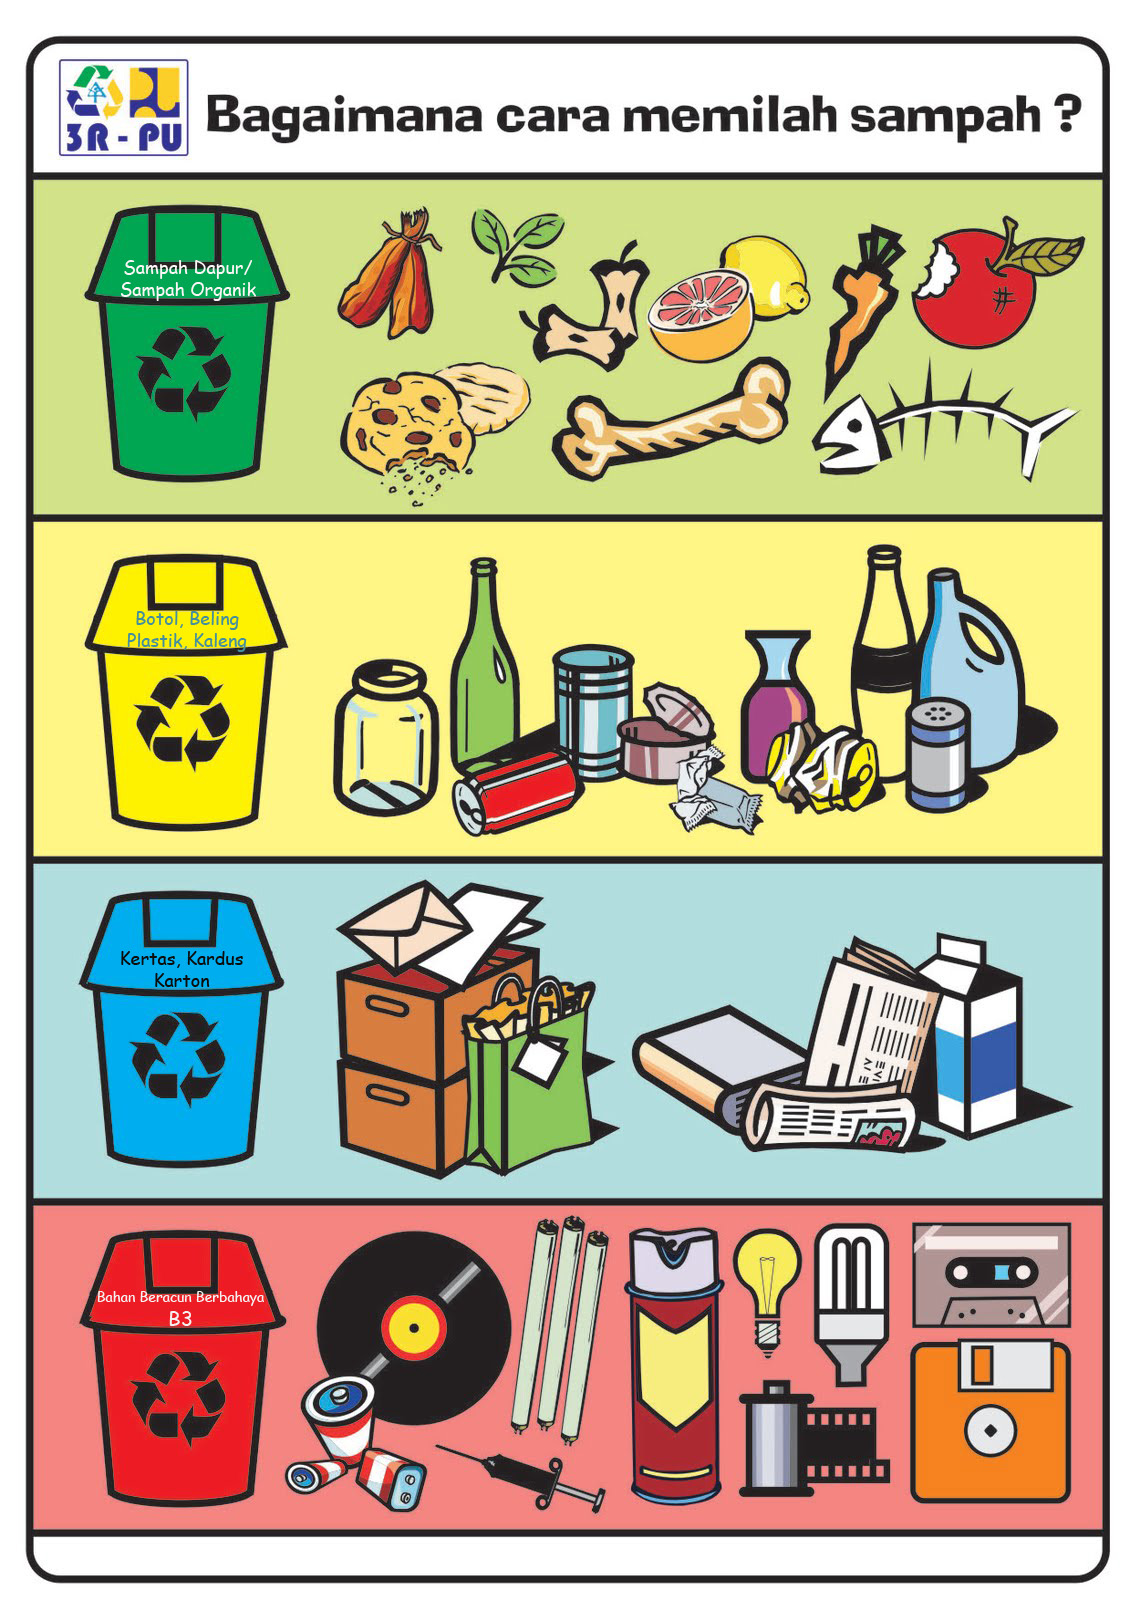 Bisa Share: Sampah, 3R dan Pemilahannya